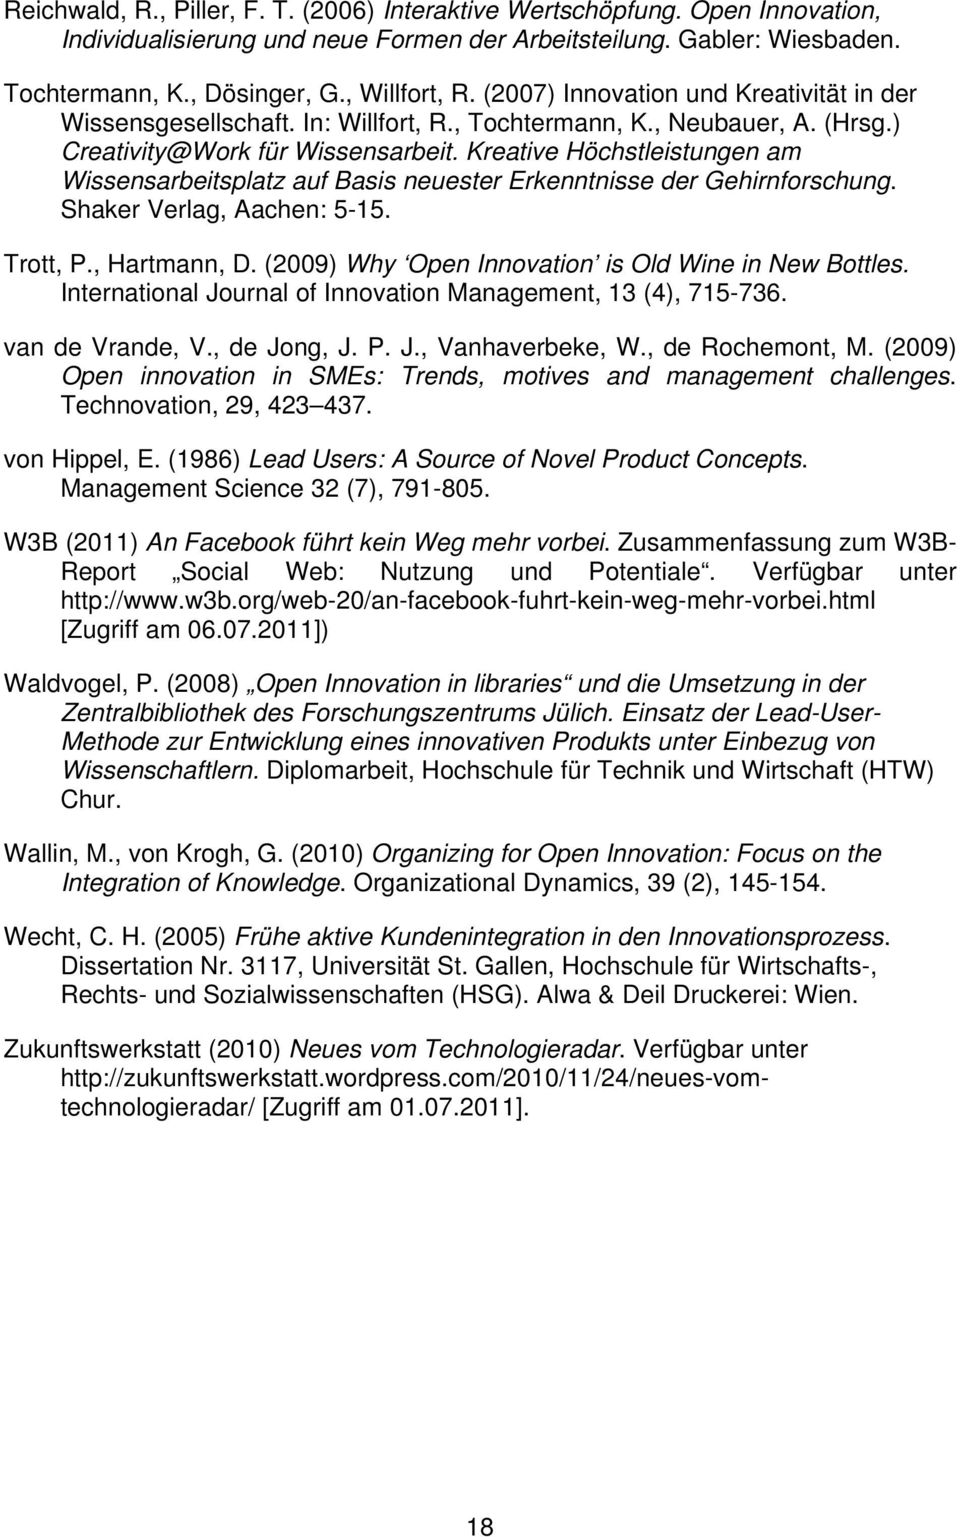 Kreative Höchstleistungen am Wissensarbeitsplatz auf Basis neuester Erkenntnisse der Gehirnforschung. Shaker Verlag, Aachen: 5-15. Trott, P., Hartmann, D.